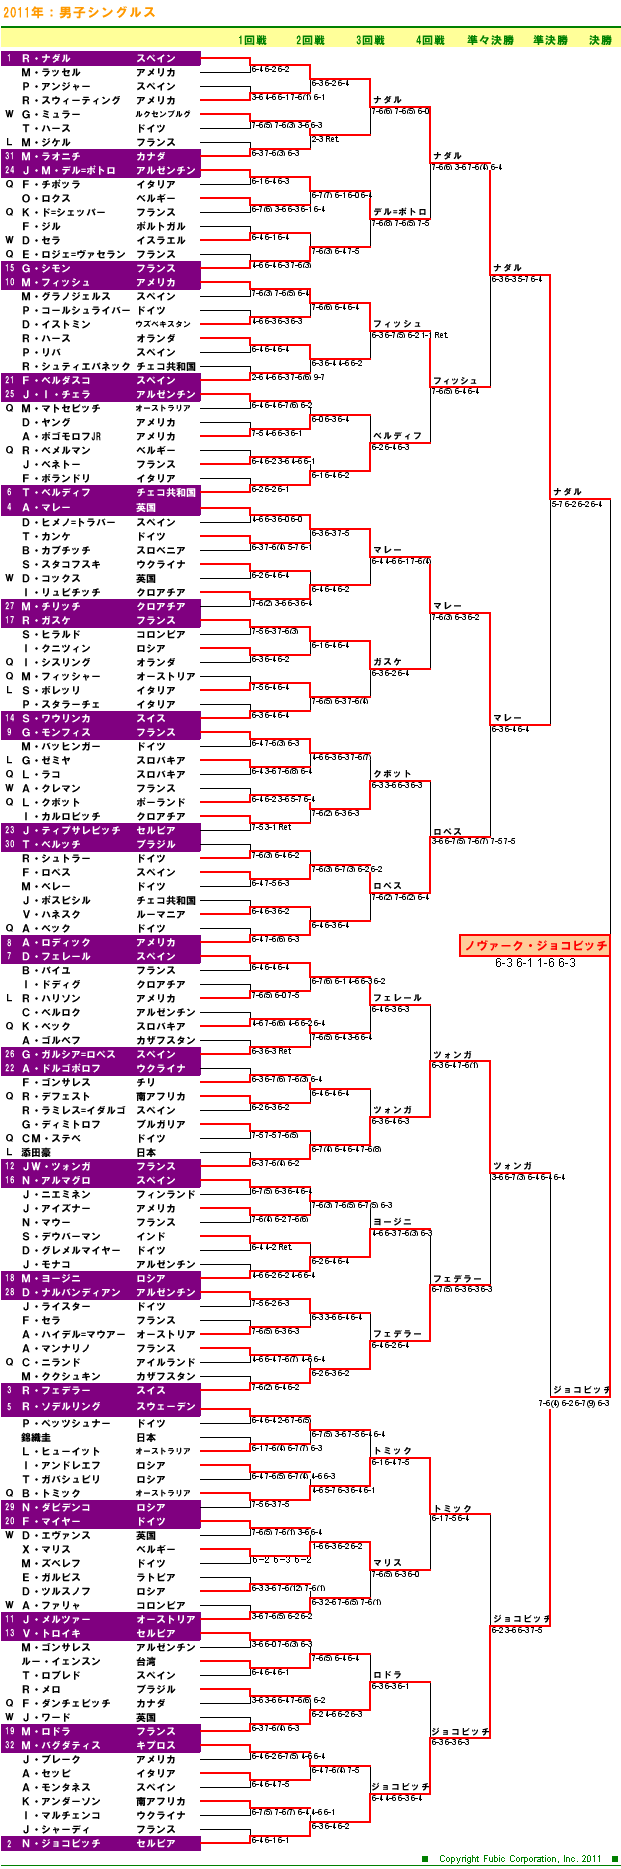 ウィンブルドンテニス2011　男子シングルスドロー表